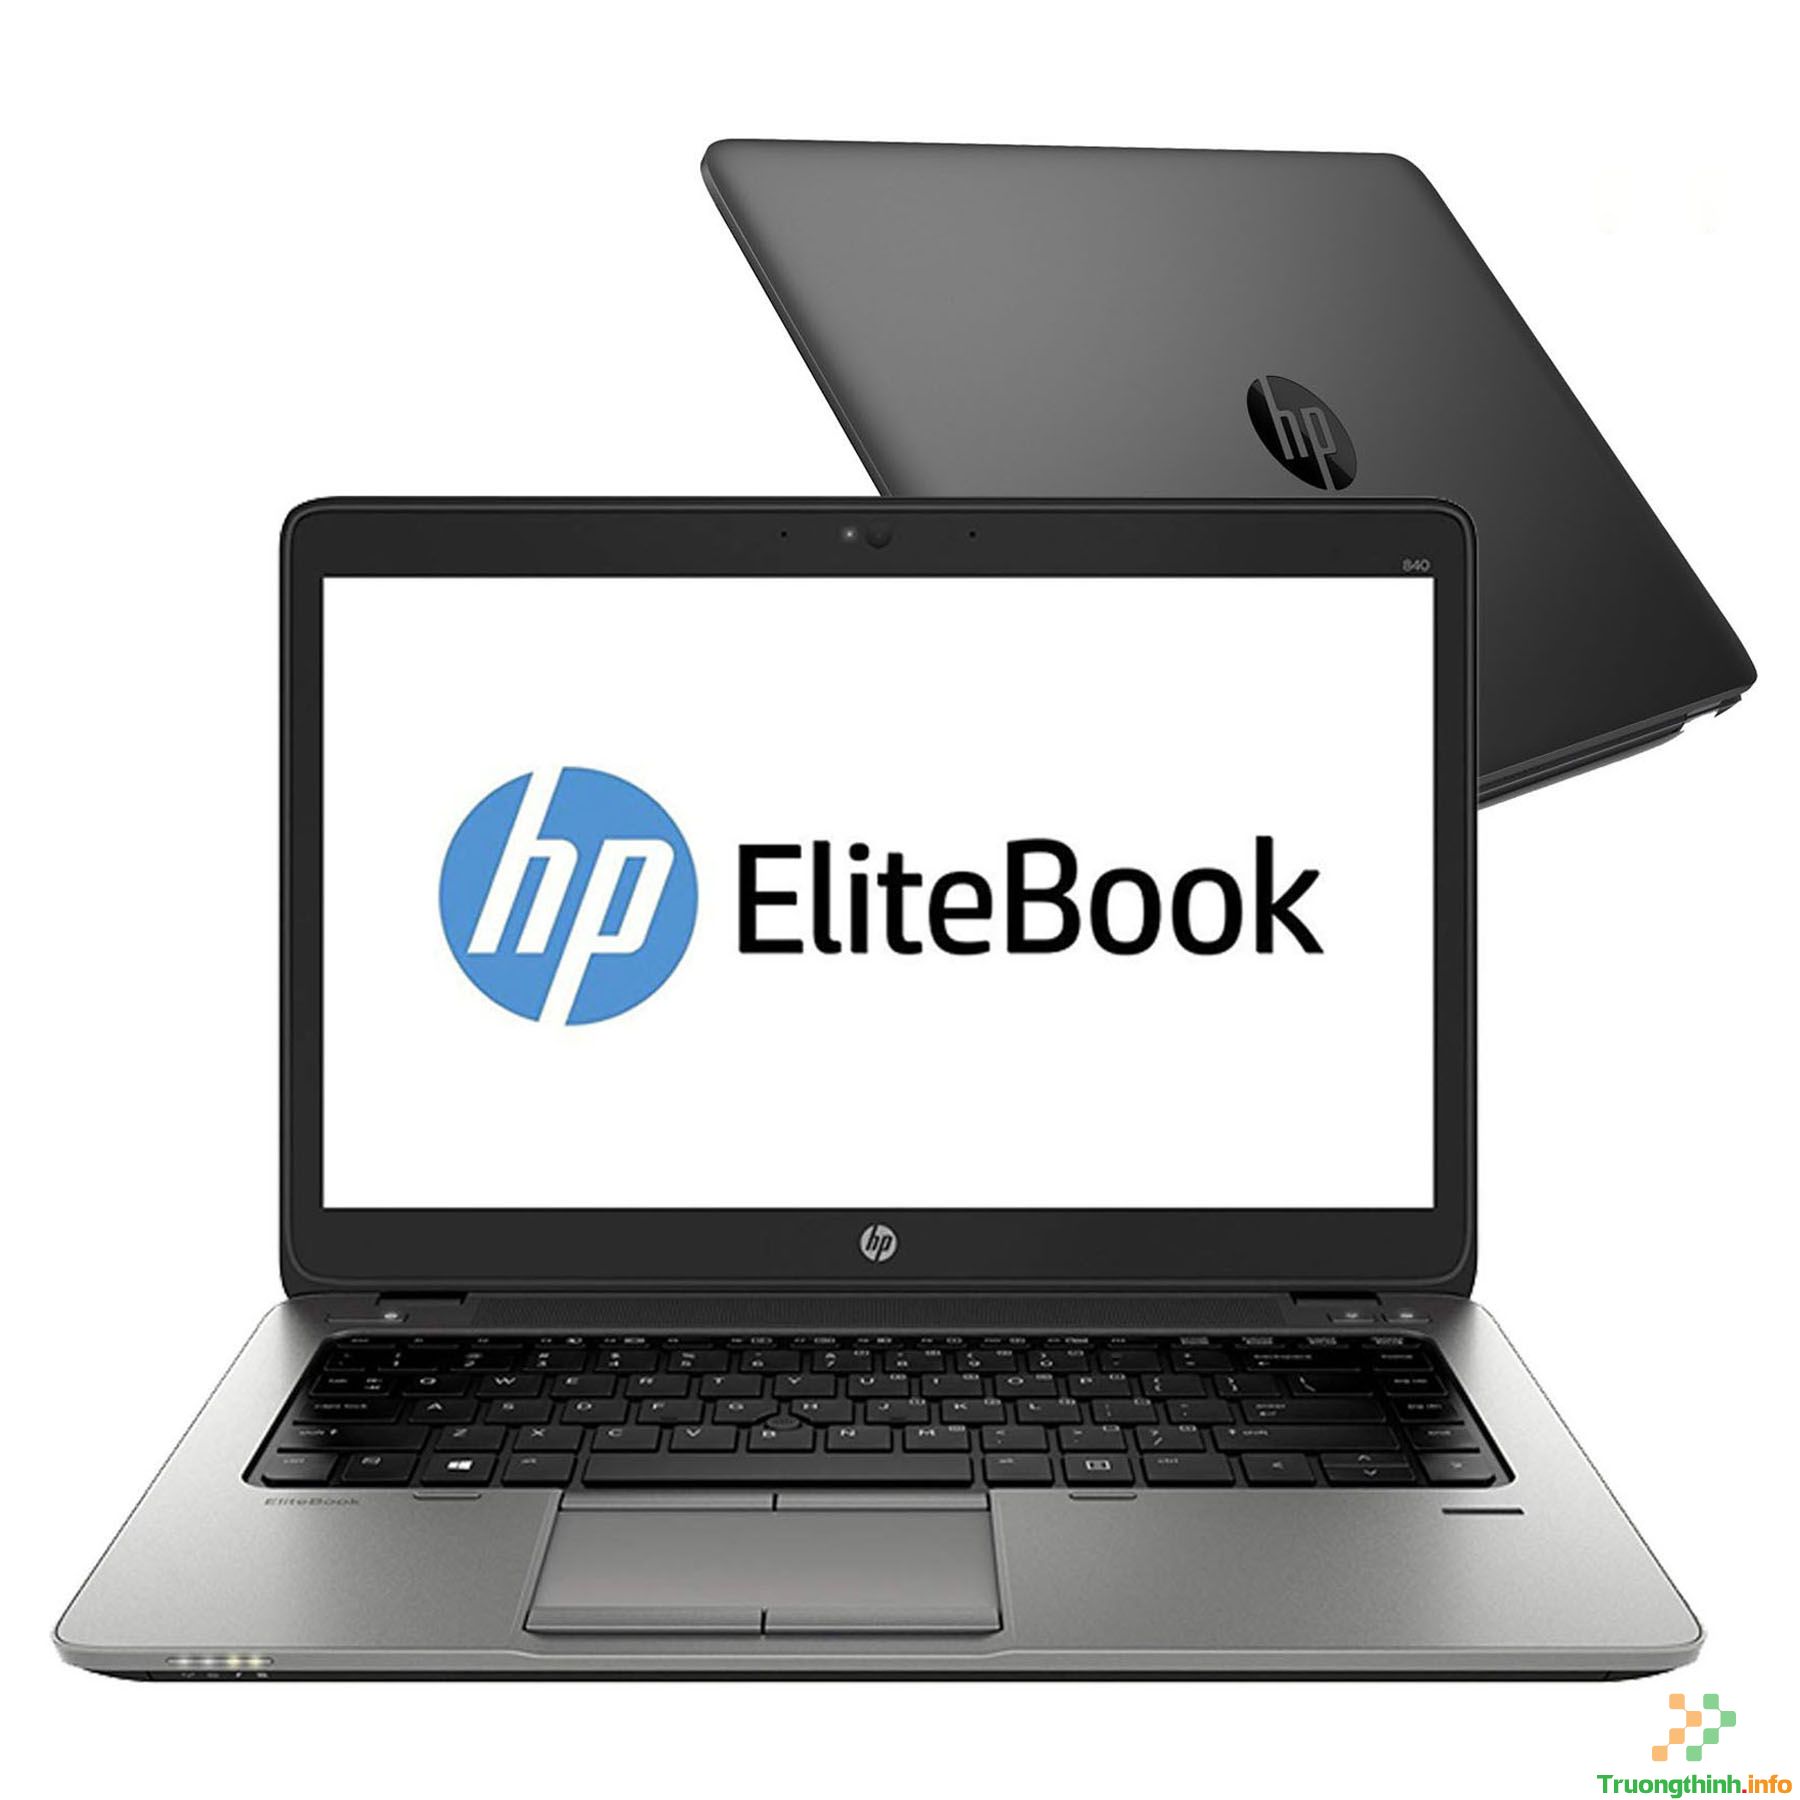  Mua Bán Sửa Thay Màn Hình Laptop HP 840 G2 - Laptop Giá Rẻ | Vi Tính Trường Thịnh 